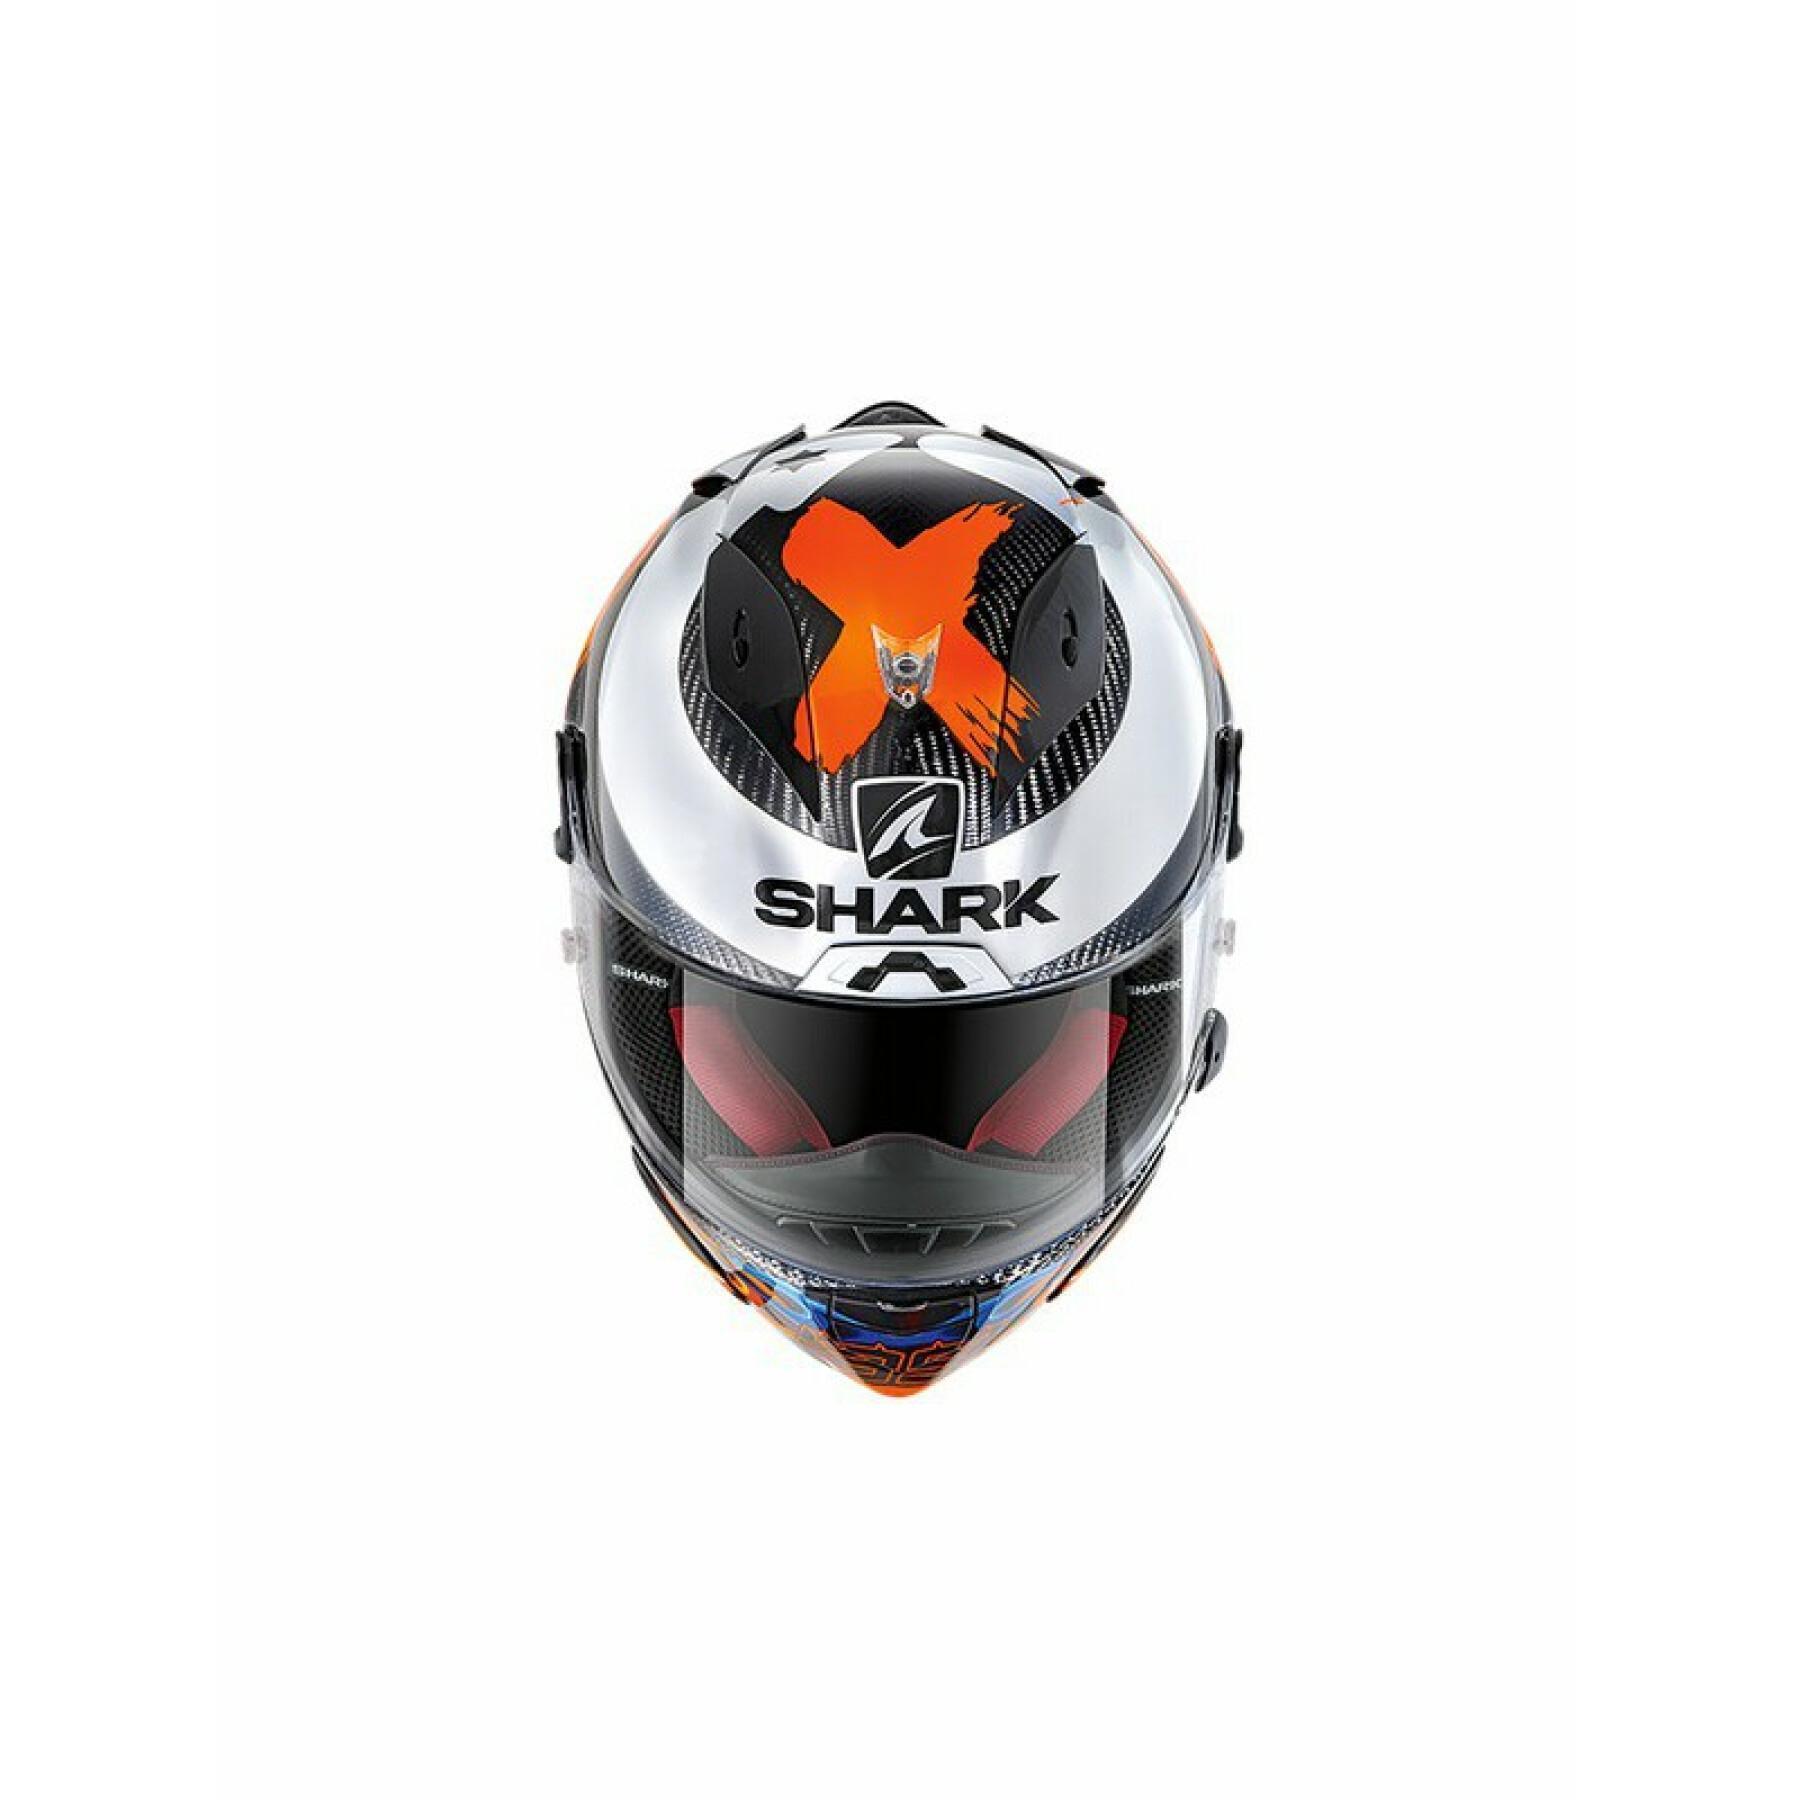 Capacete de motociclista de rosto inteiro Shark race-r pro carbon lorenzo 2019